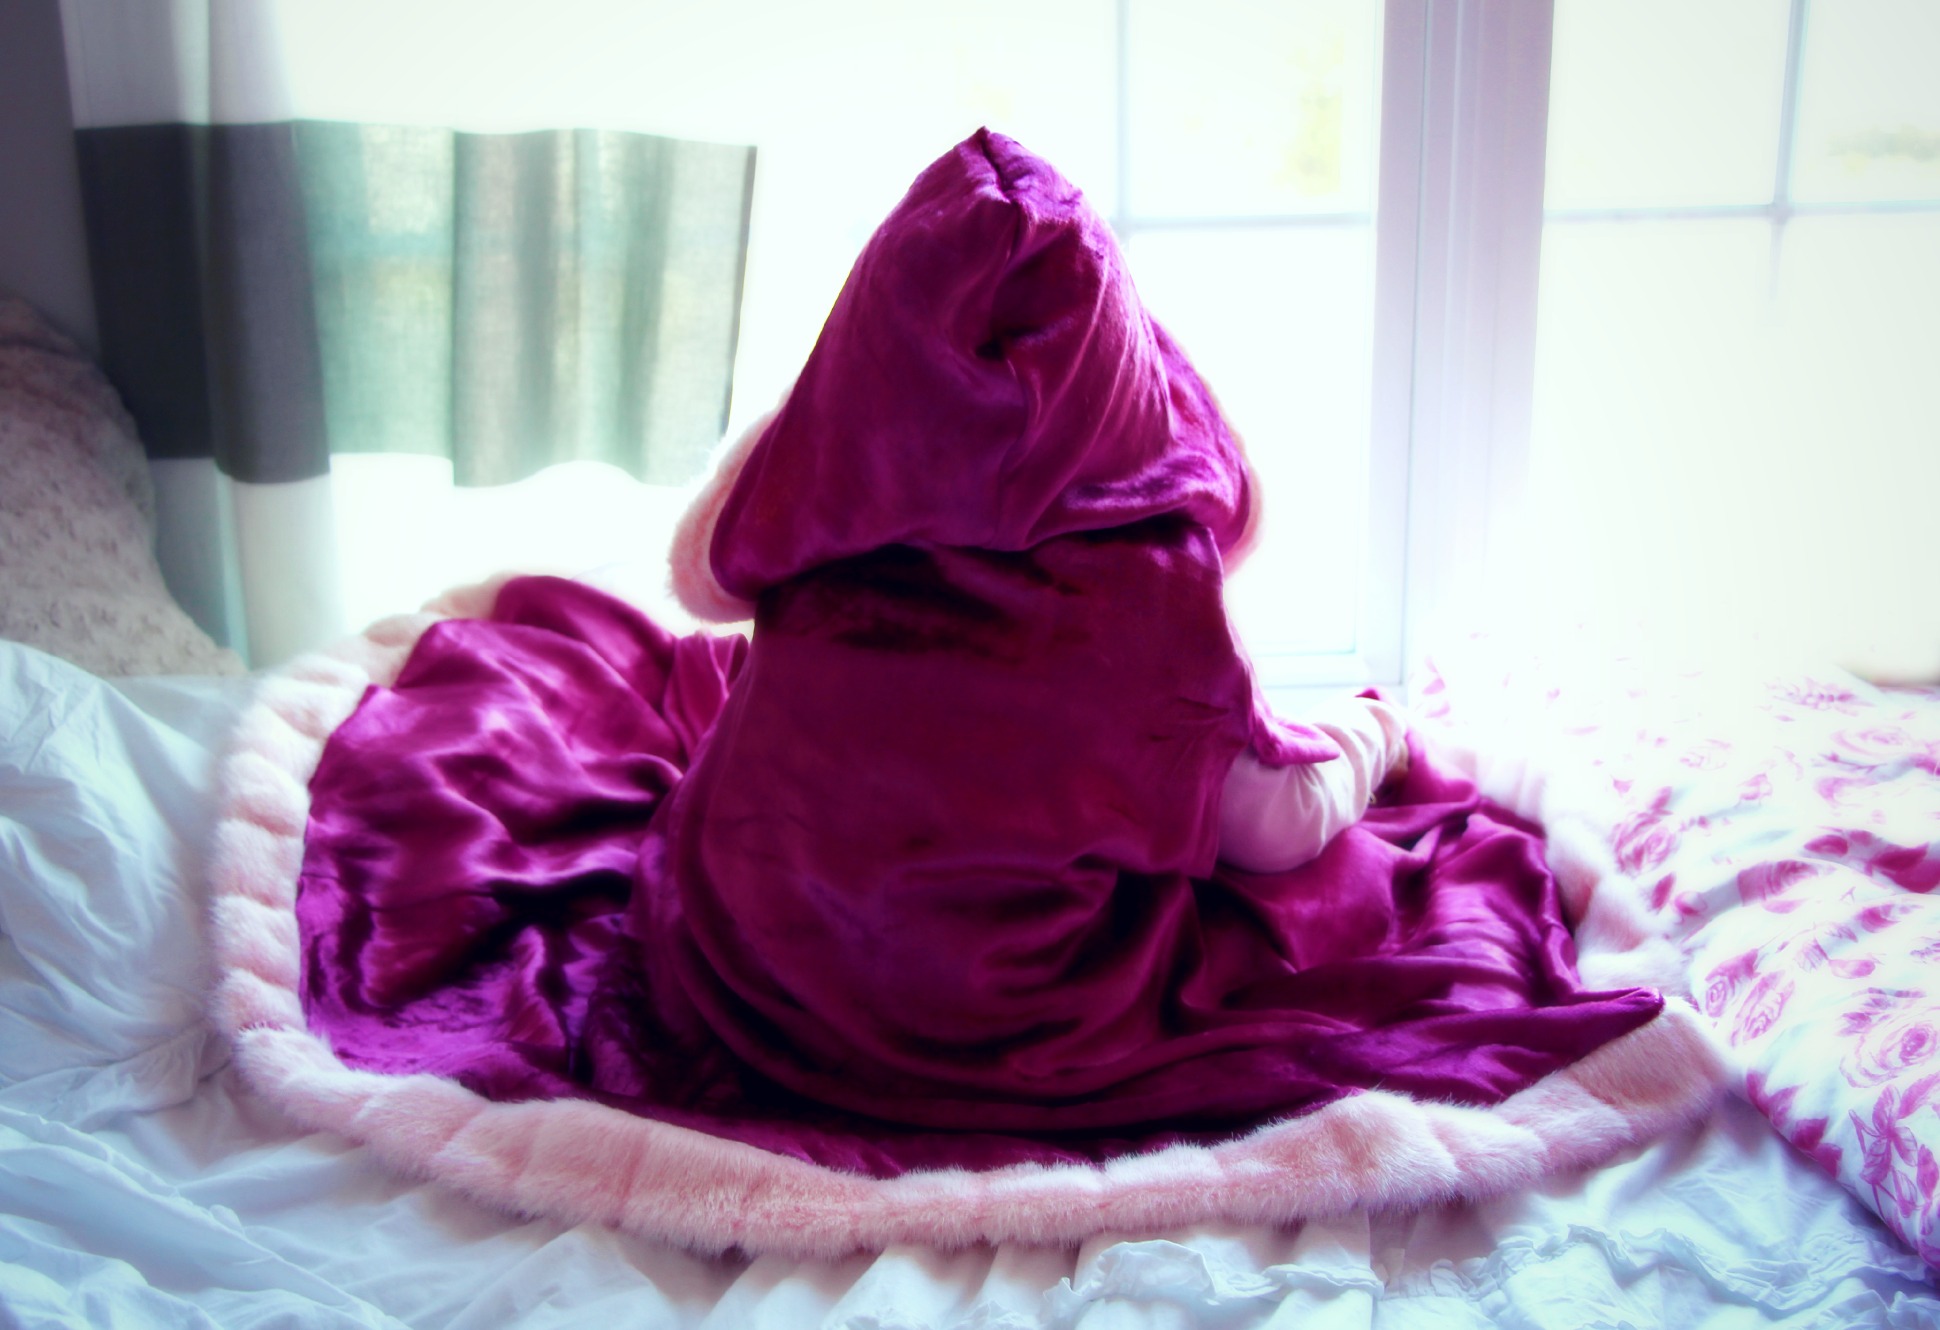 fur trimmed pink velvet cape for your little princess:: Little Pink Monster